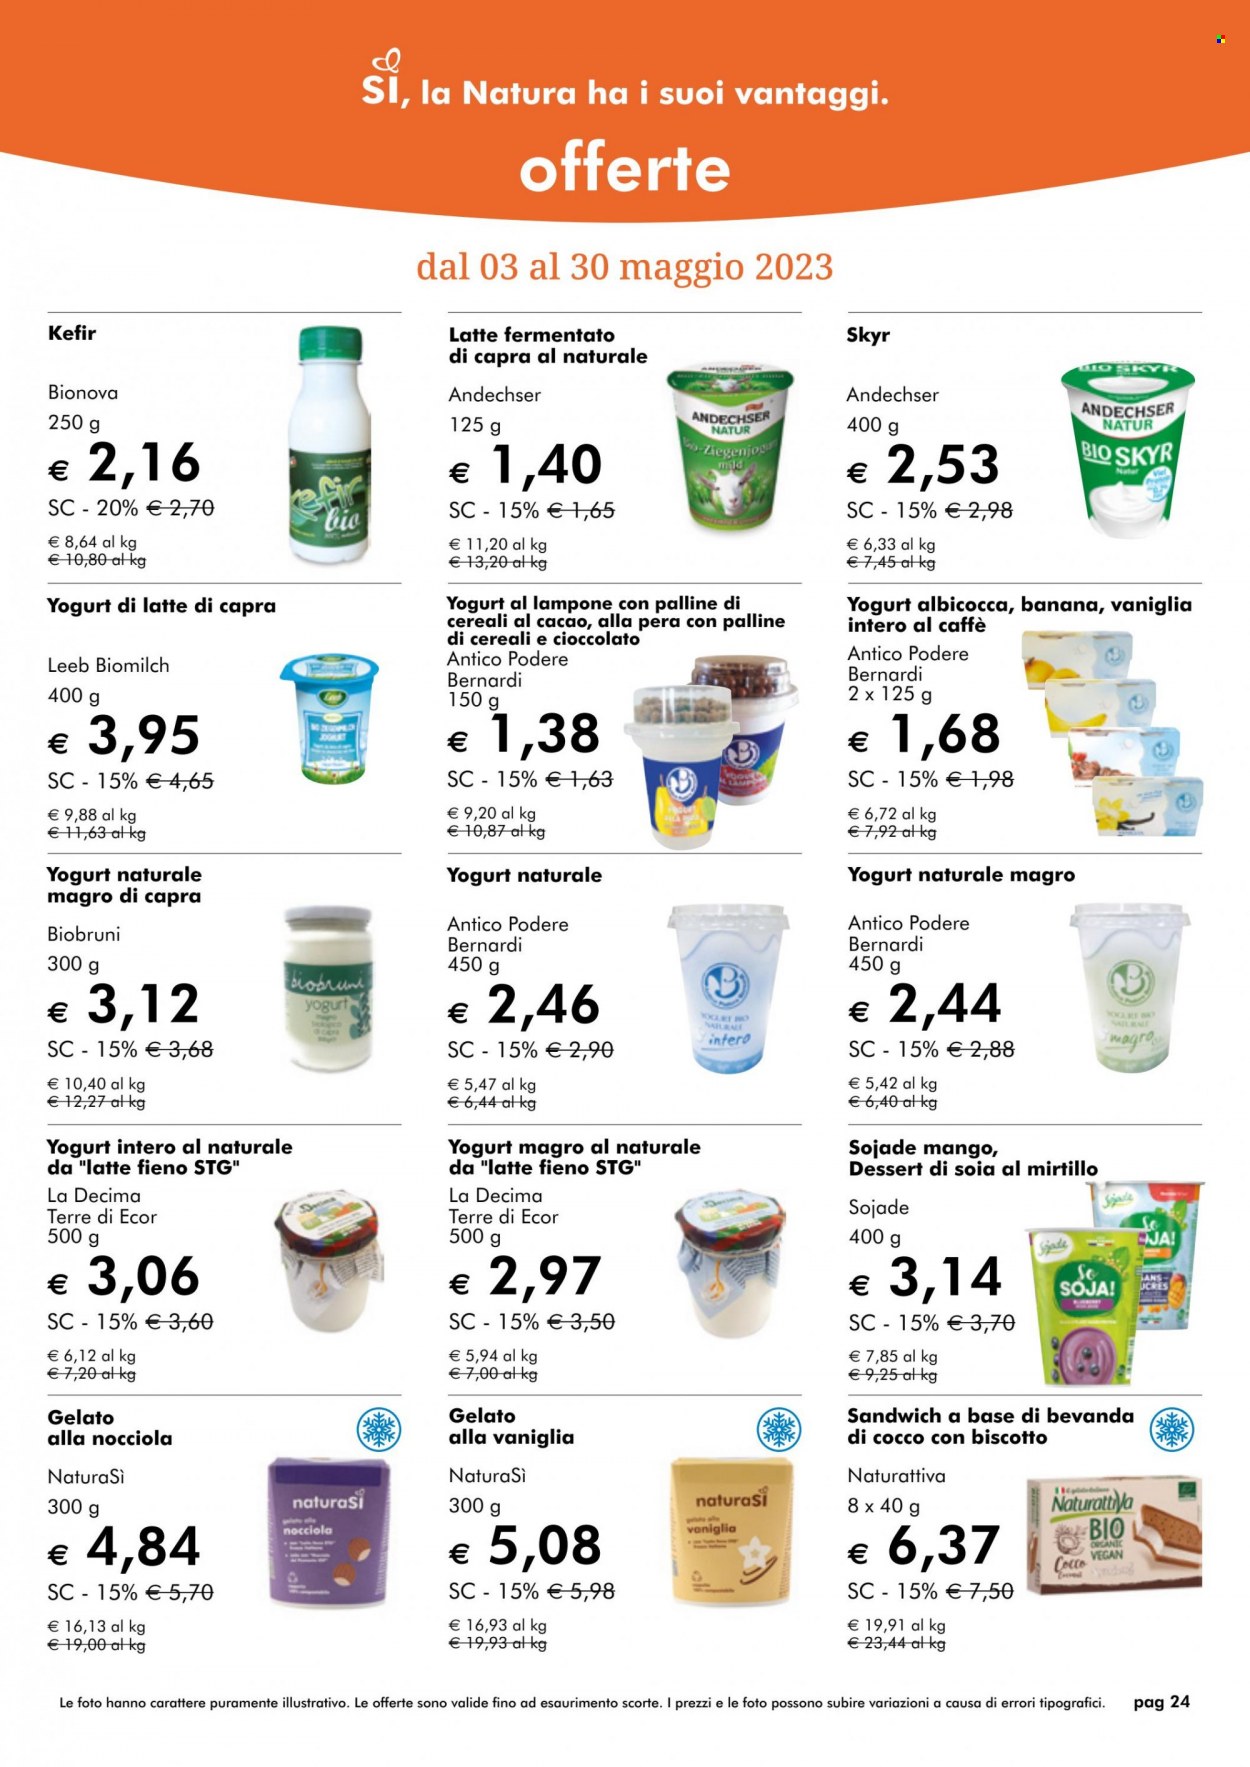 thumbnail - Volantino Natura Sì - 29/4/2023 - 27/6/2023 - Prodotti in offerta - yogurt, skyr, kefir, gelato, biscotti, cereali, palline di cereali, soia. Pagina 24.